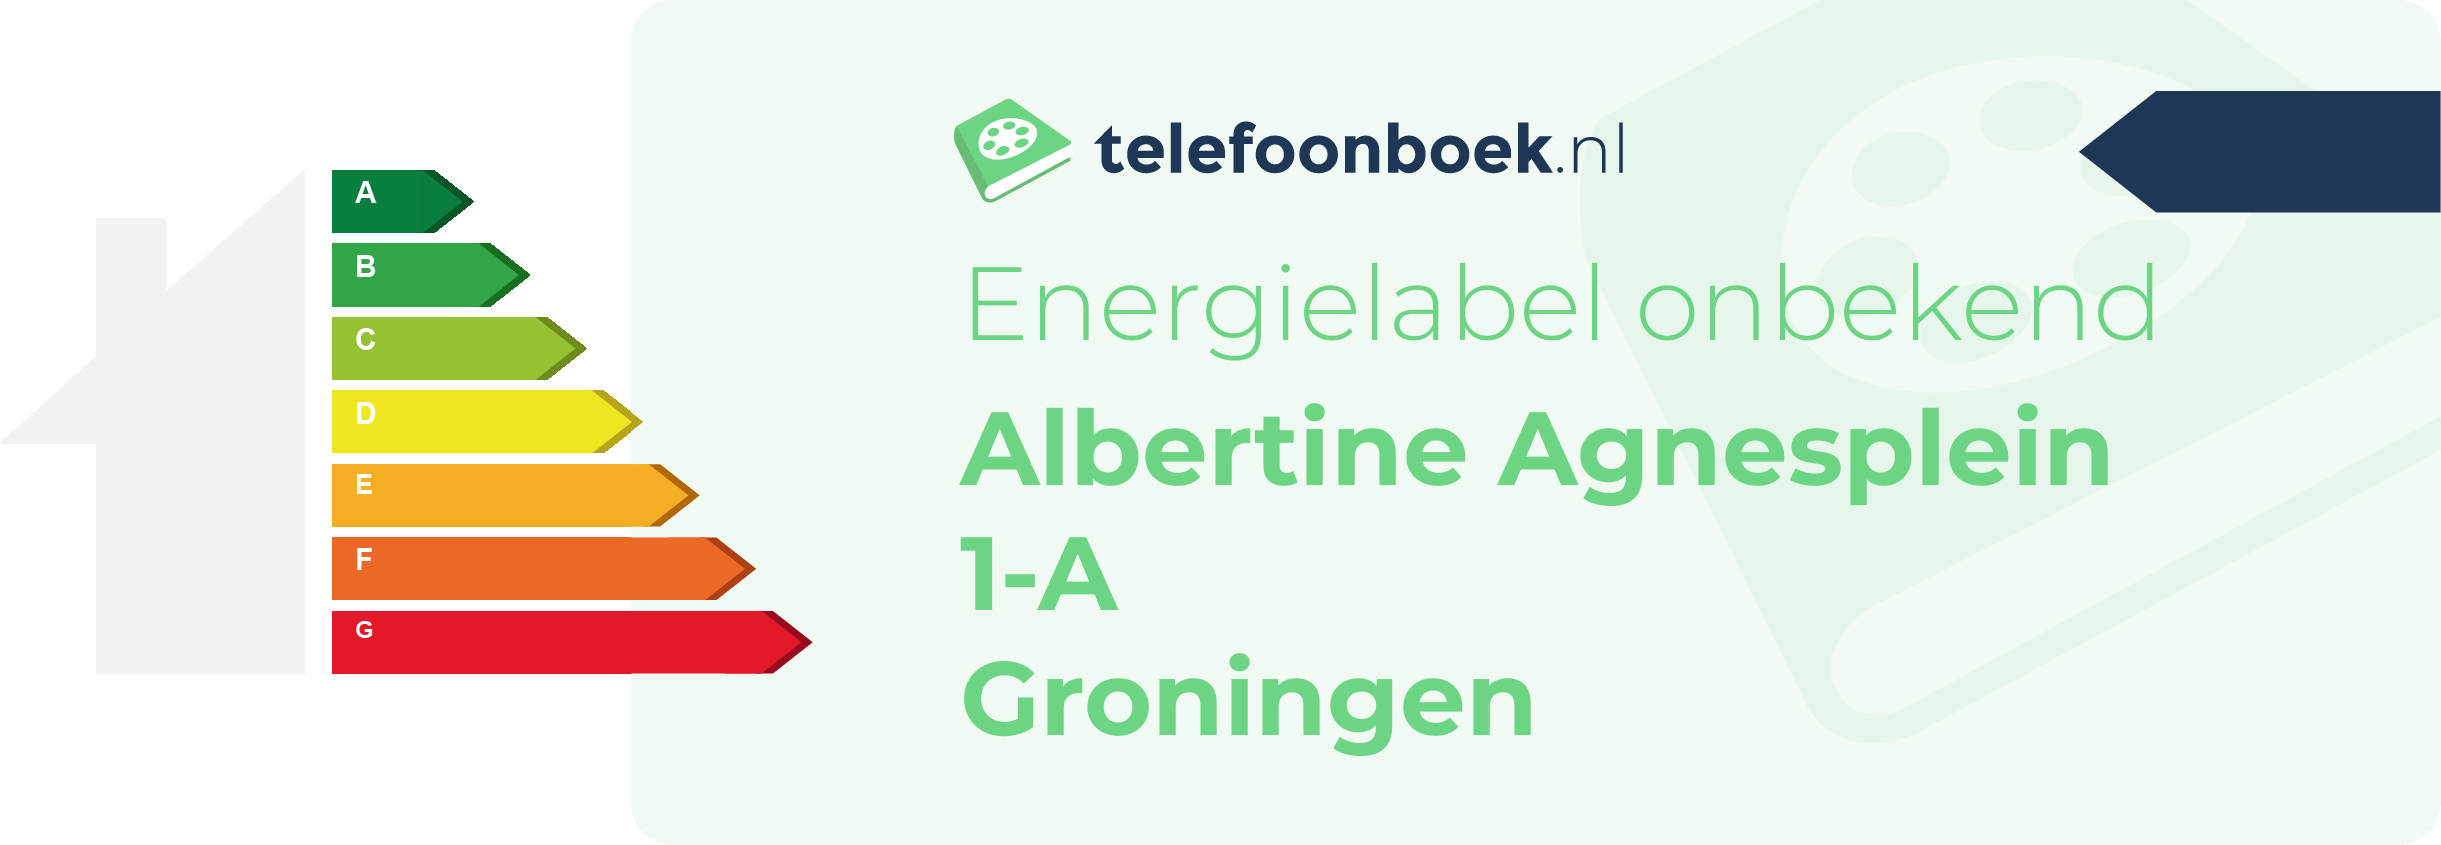 Energielabel Albertine Agnesplein 1-A Groningen